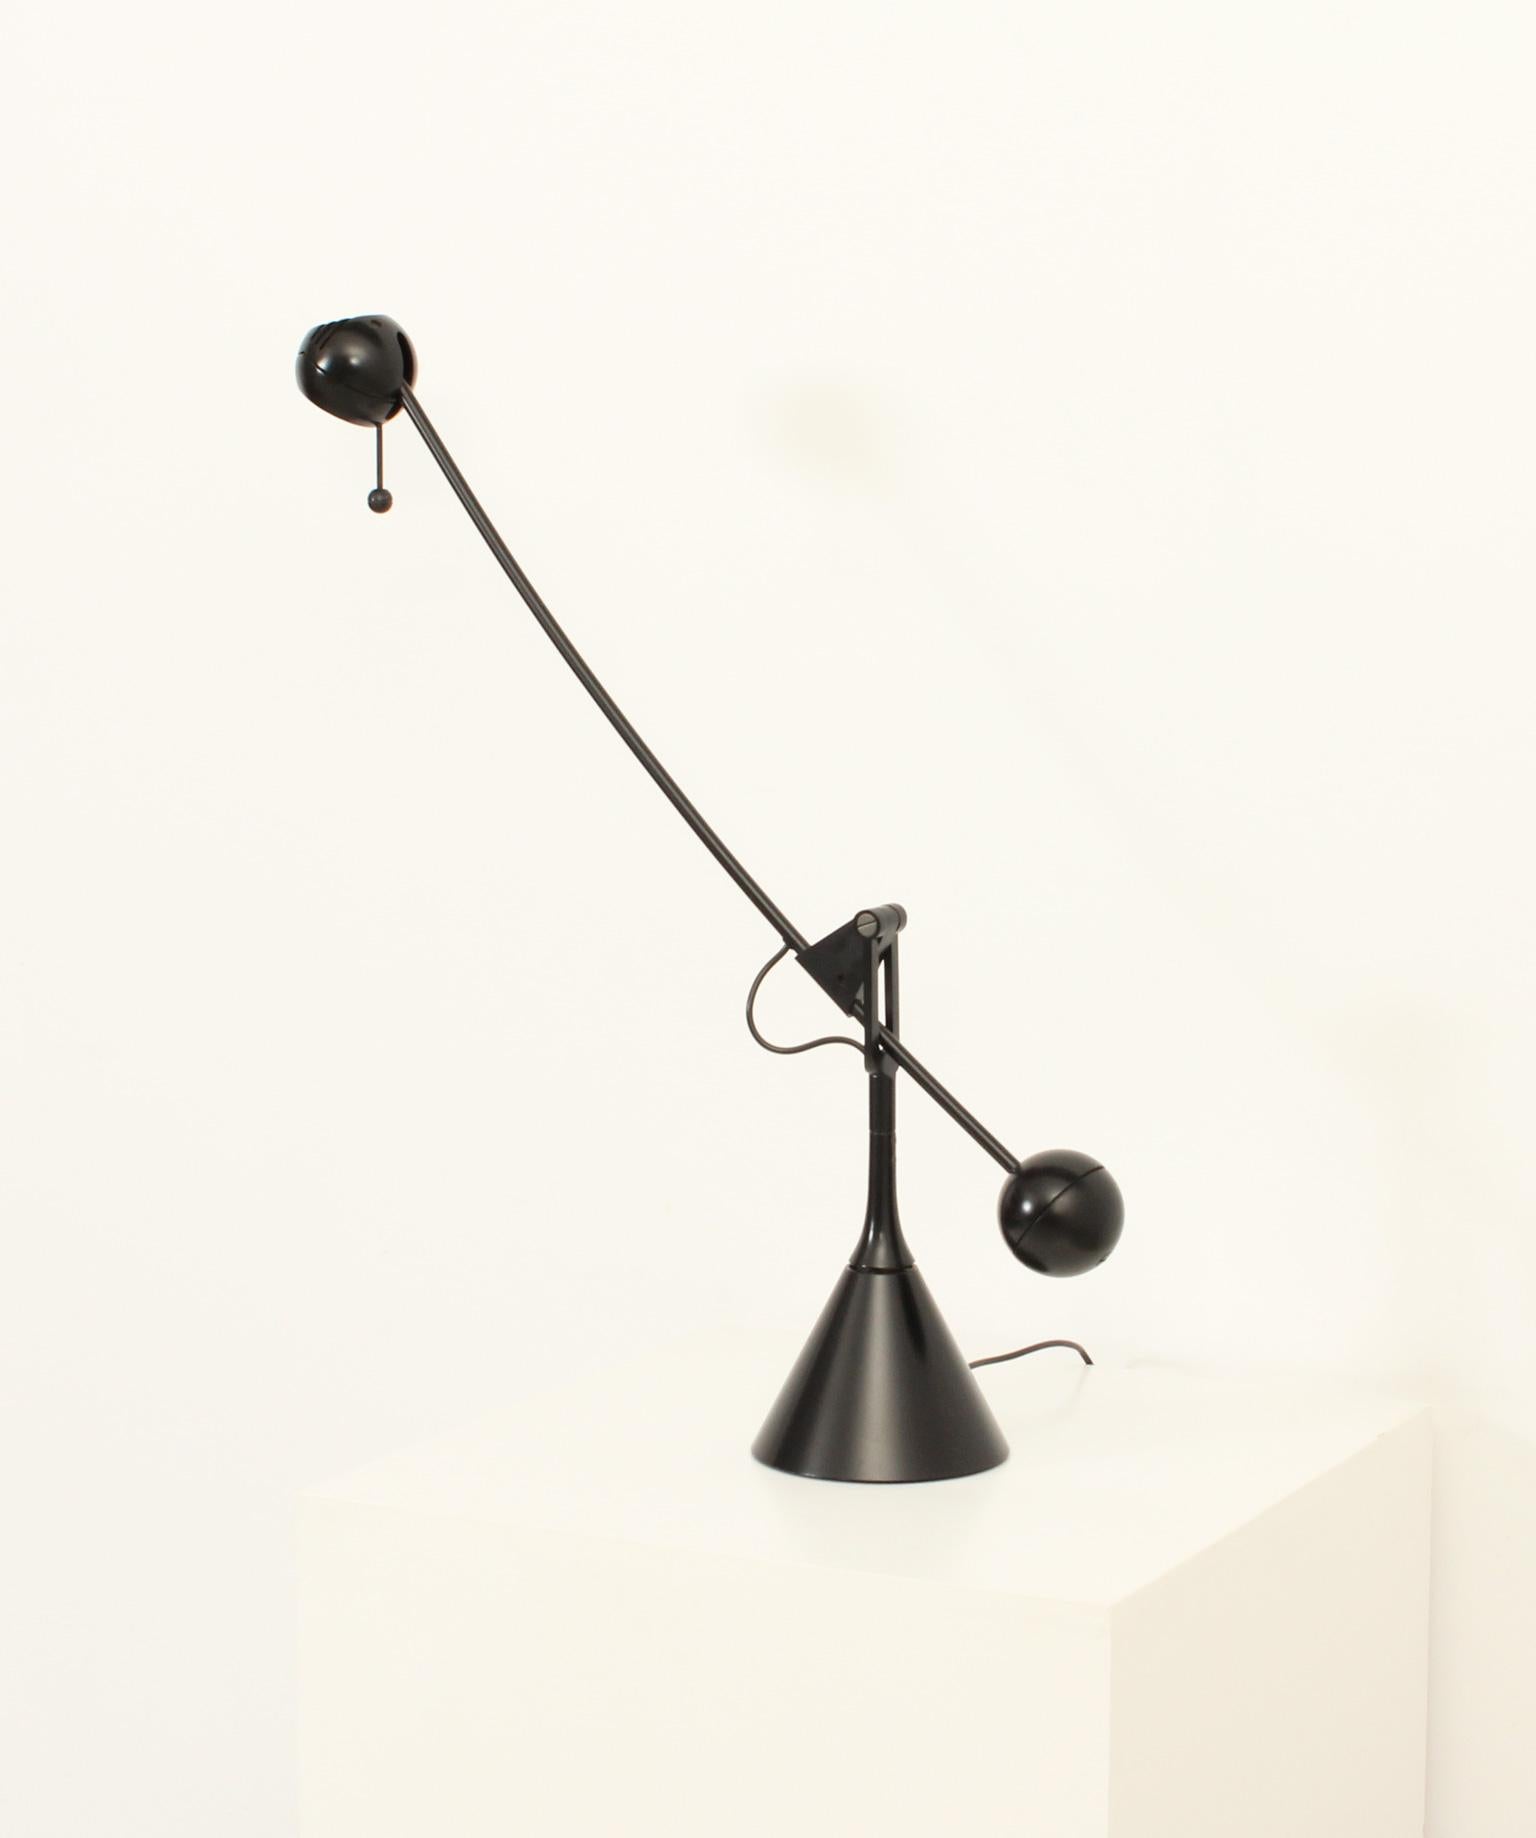 Calder-Tischlampe von Enric Franch für Metalarte, 1975 (Metall)